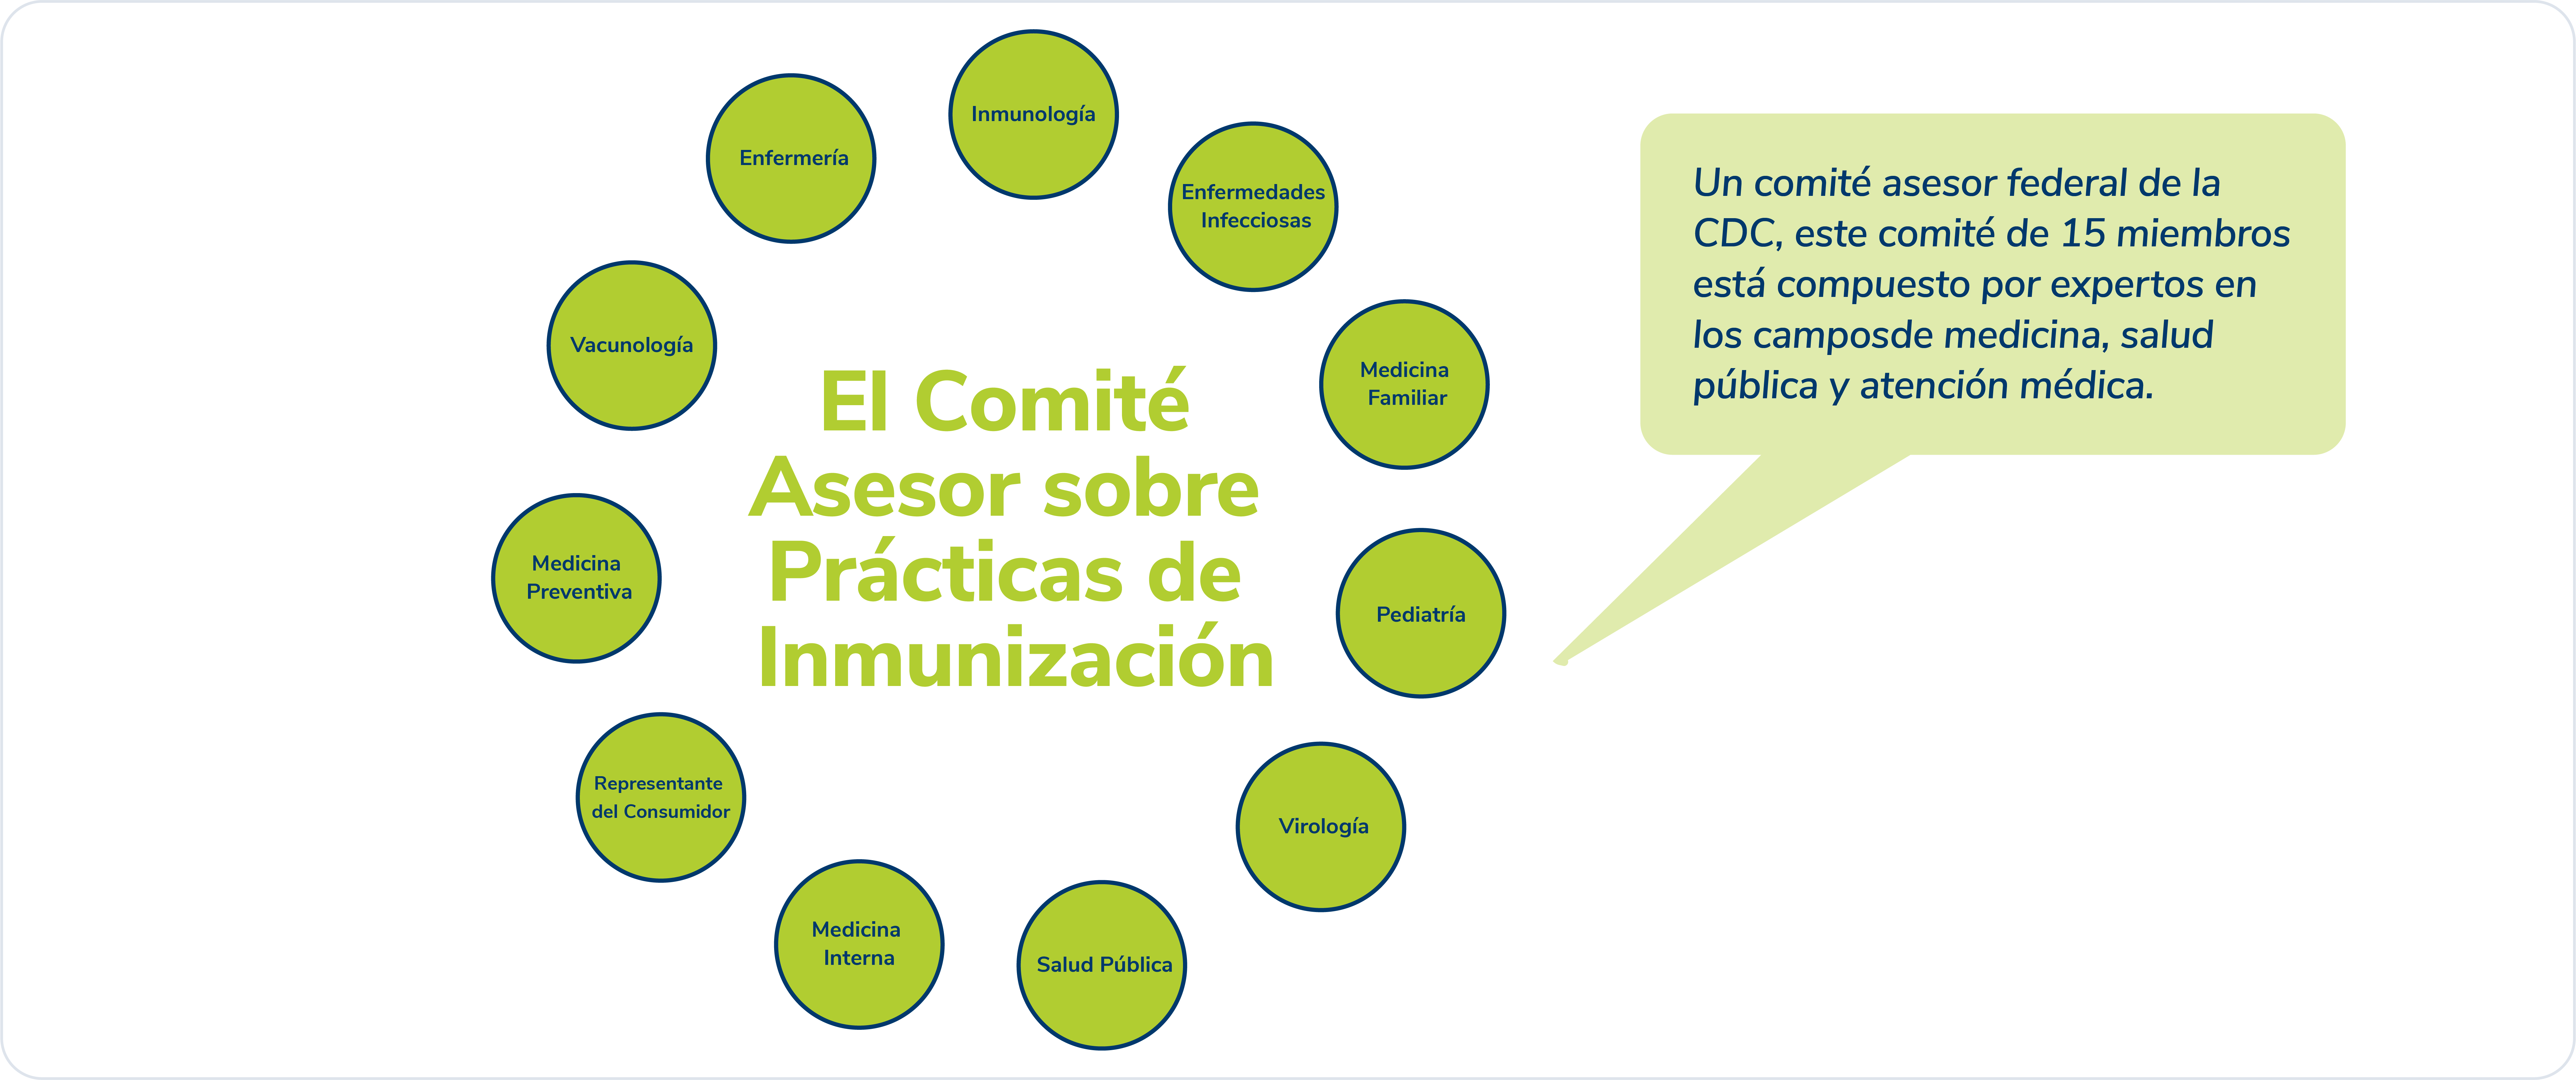 Graph El Comite Asesor sobre Practicas de Inmunizacion